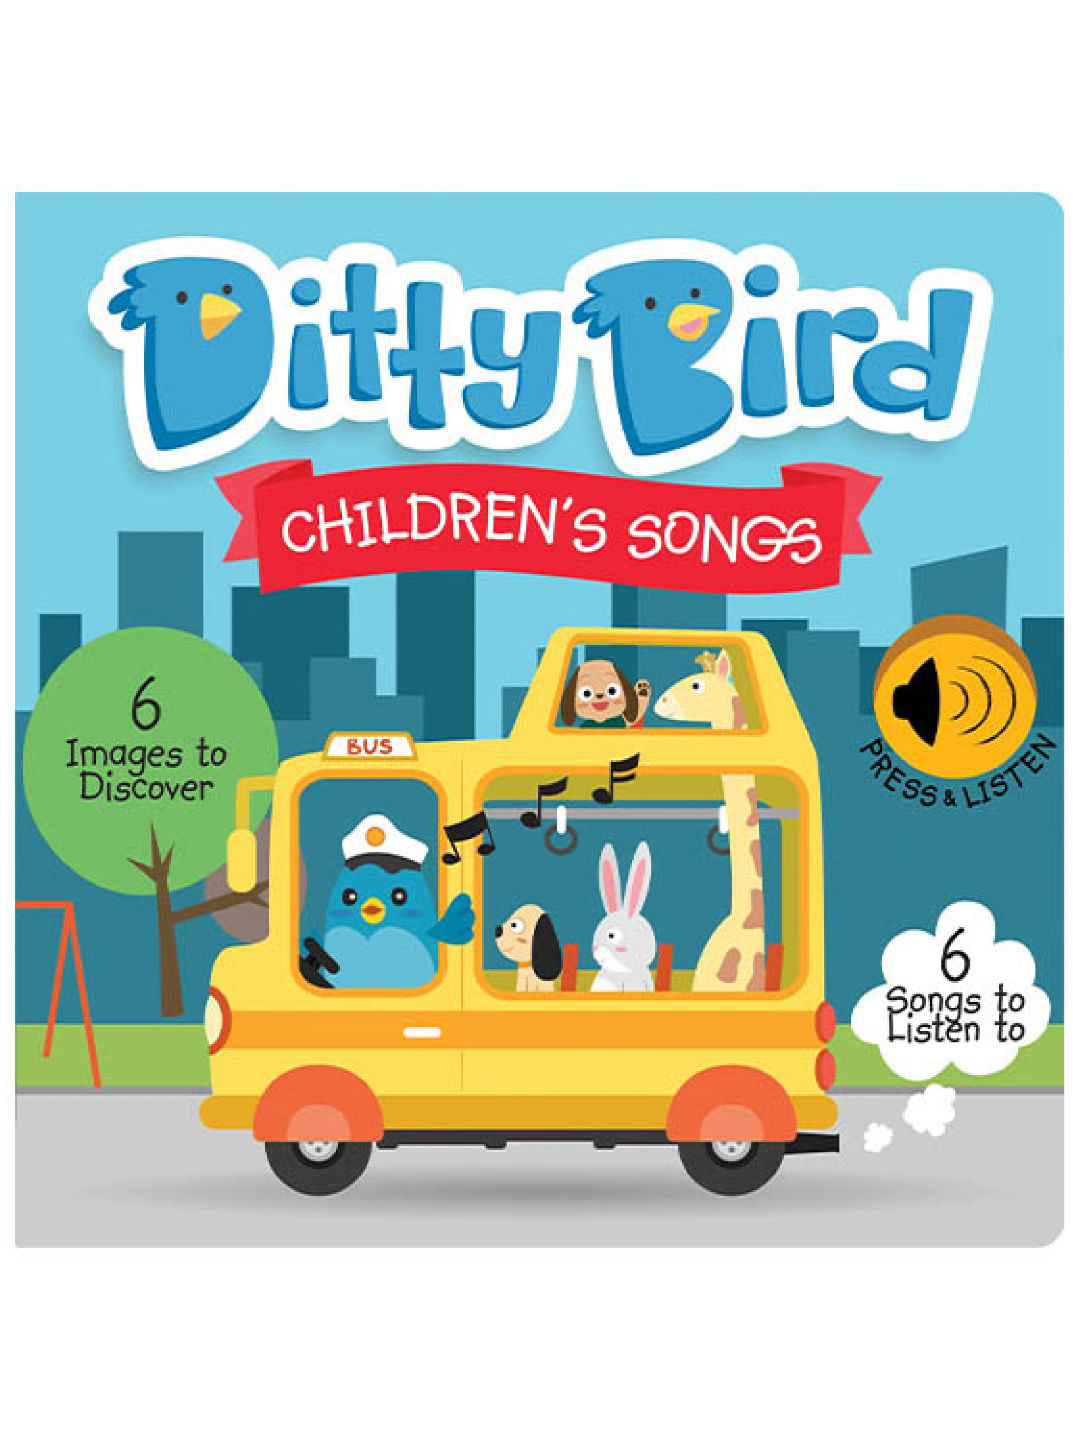 Ditty Bird Musical Book - Children's Songs